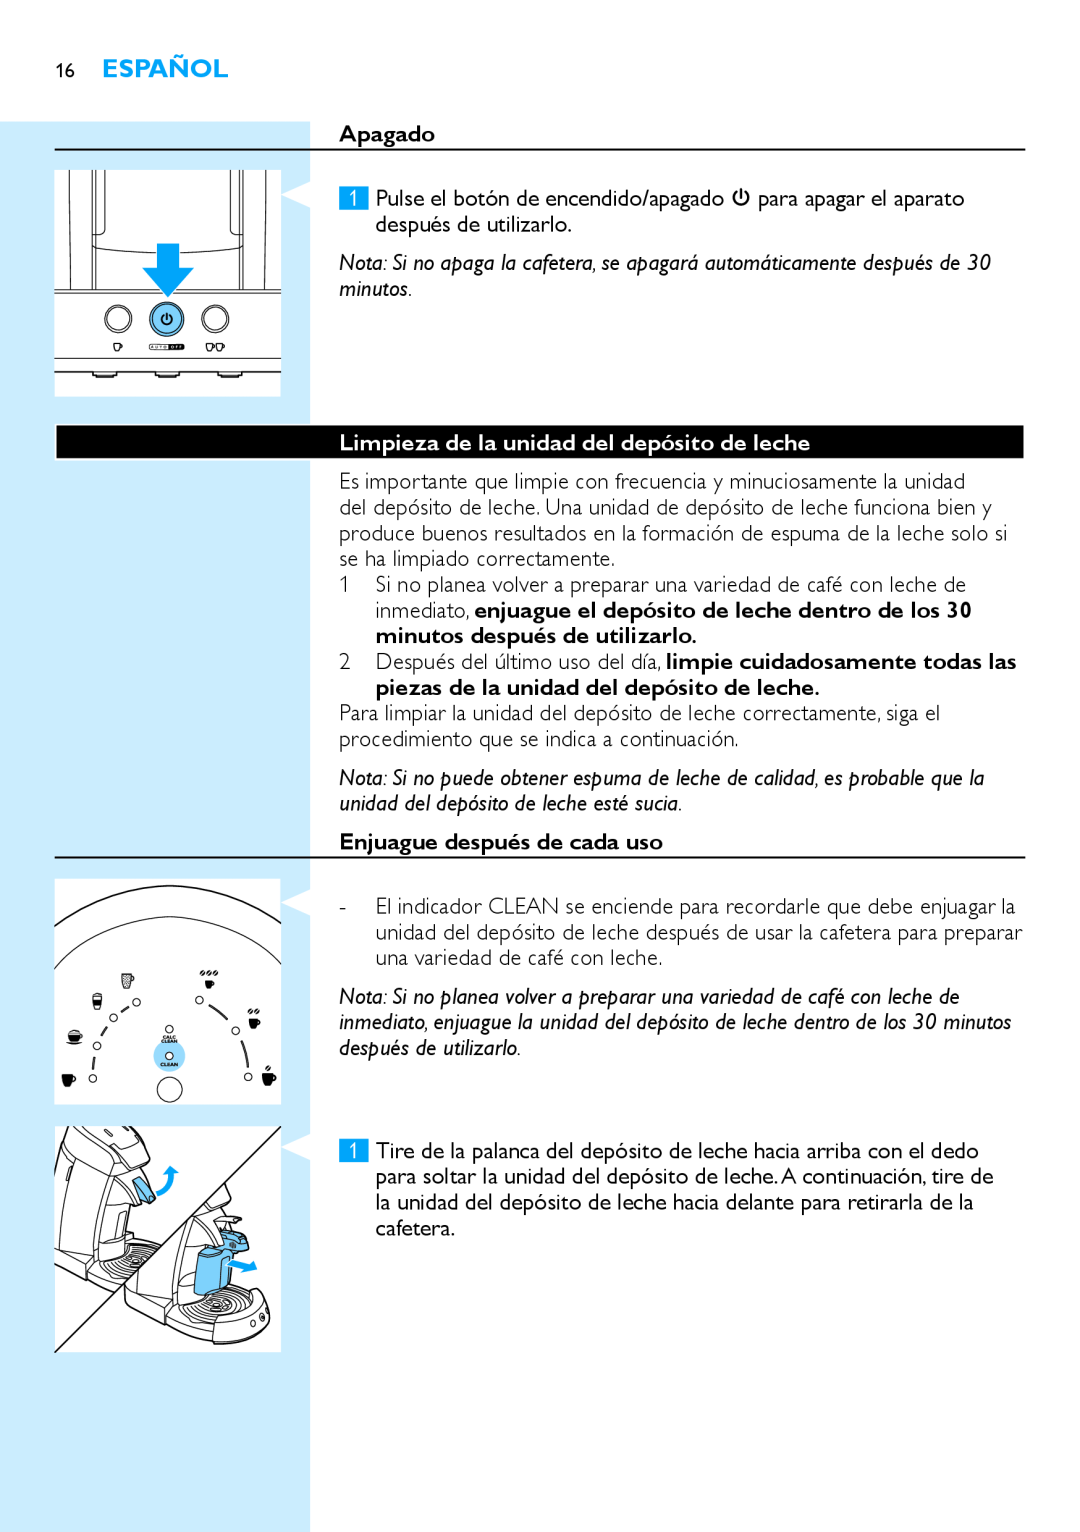 Philips HD7854 manual Español, Apagado, Limpieza de la unidad del depósito de leche, Enjuague después de cada uso 